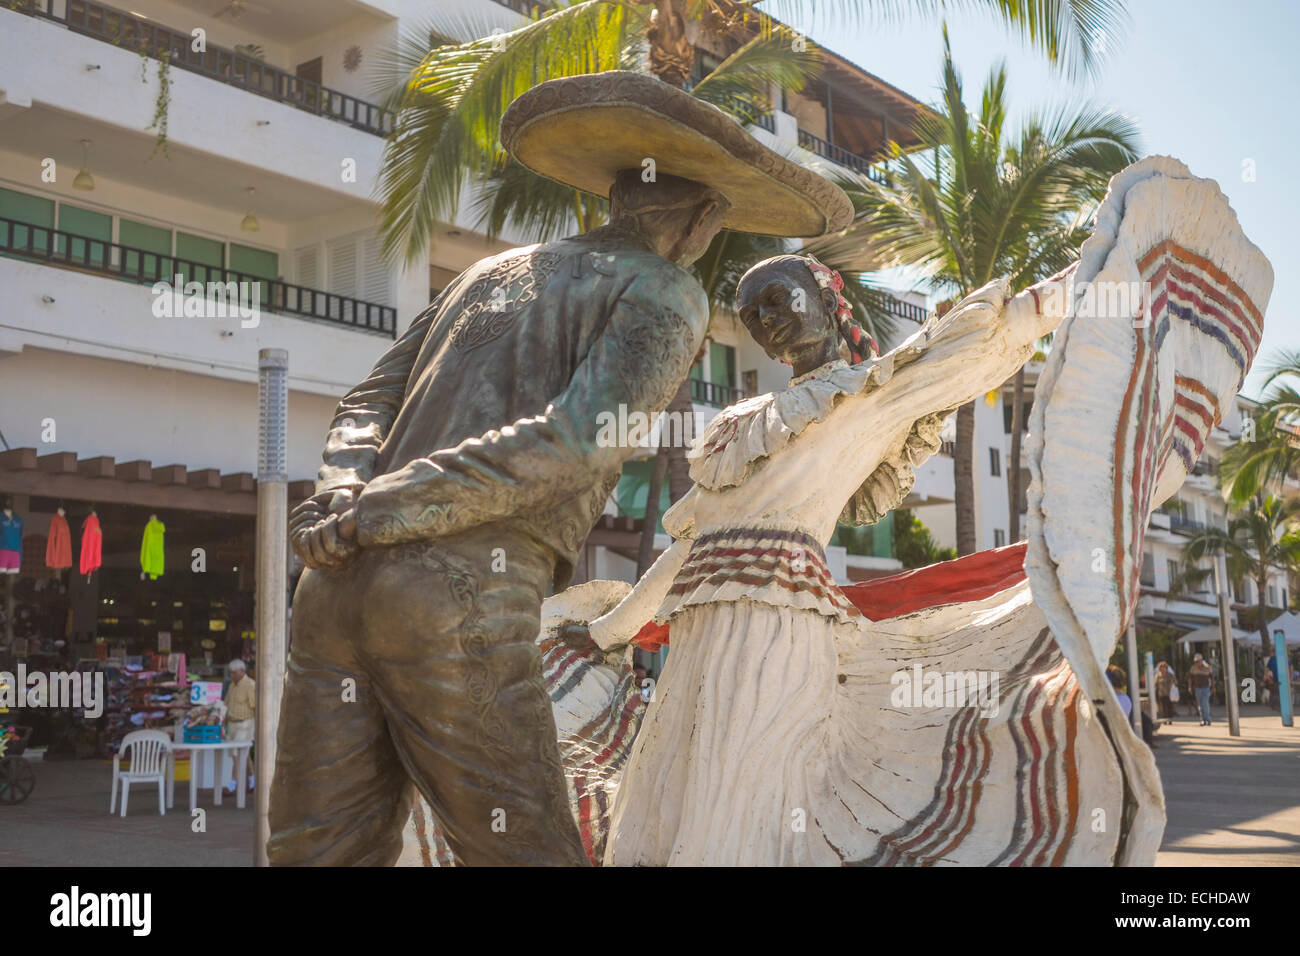 Puerto Vallarta, Mexiko - Statue des mexikanischen Paares, traditionell gekleidet, tanzen. Vallarta Tänzer. Am Malecon gelegen. Stockfoto